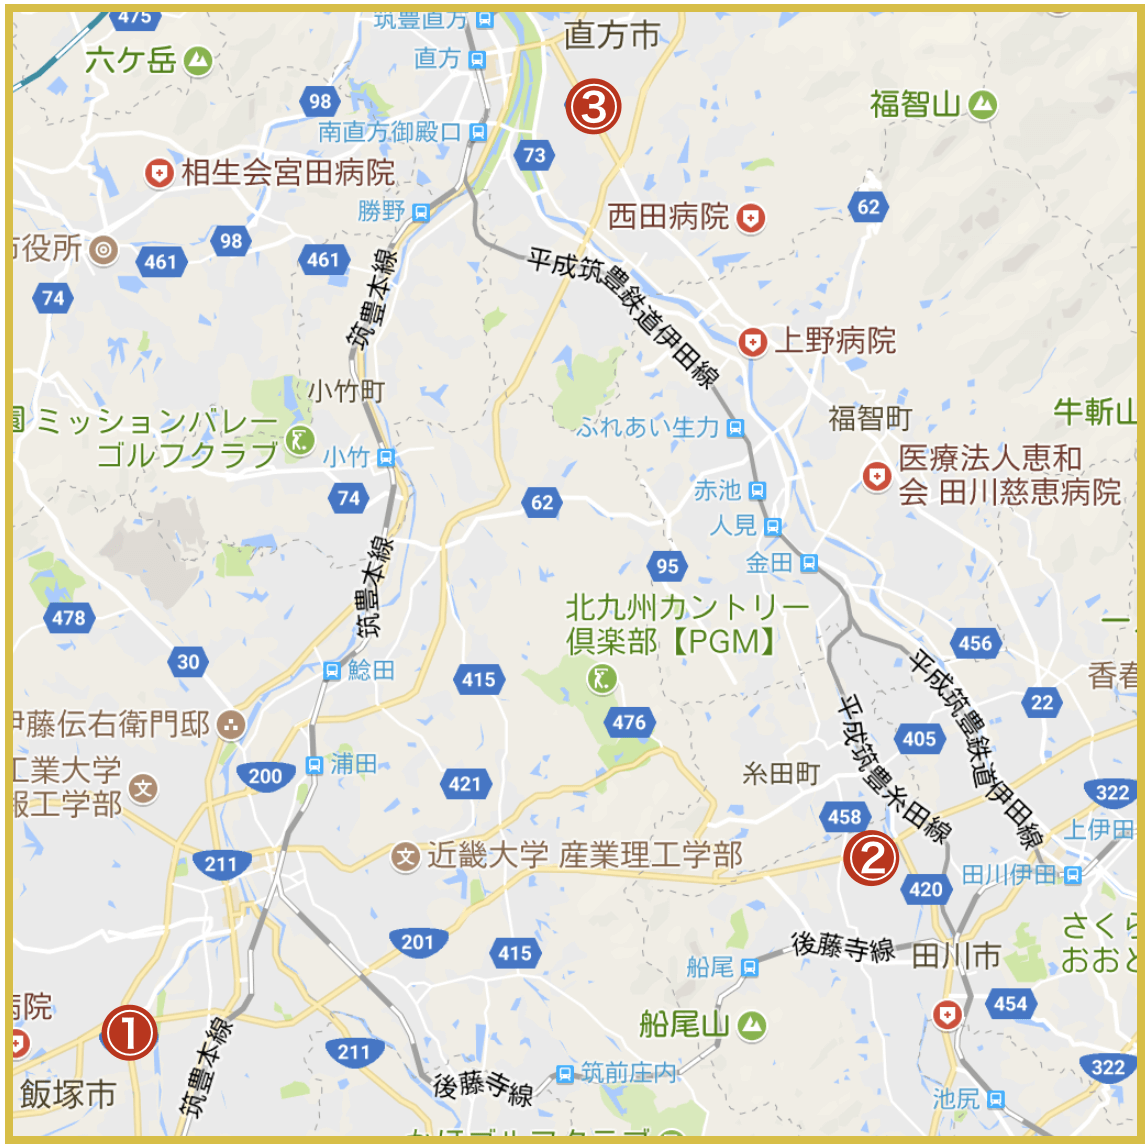 福岡県筑豊地域にあるアイフル店舗・ATMの位置